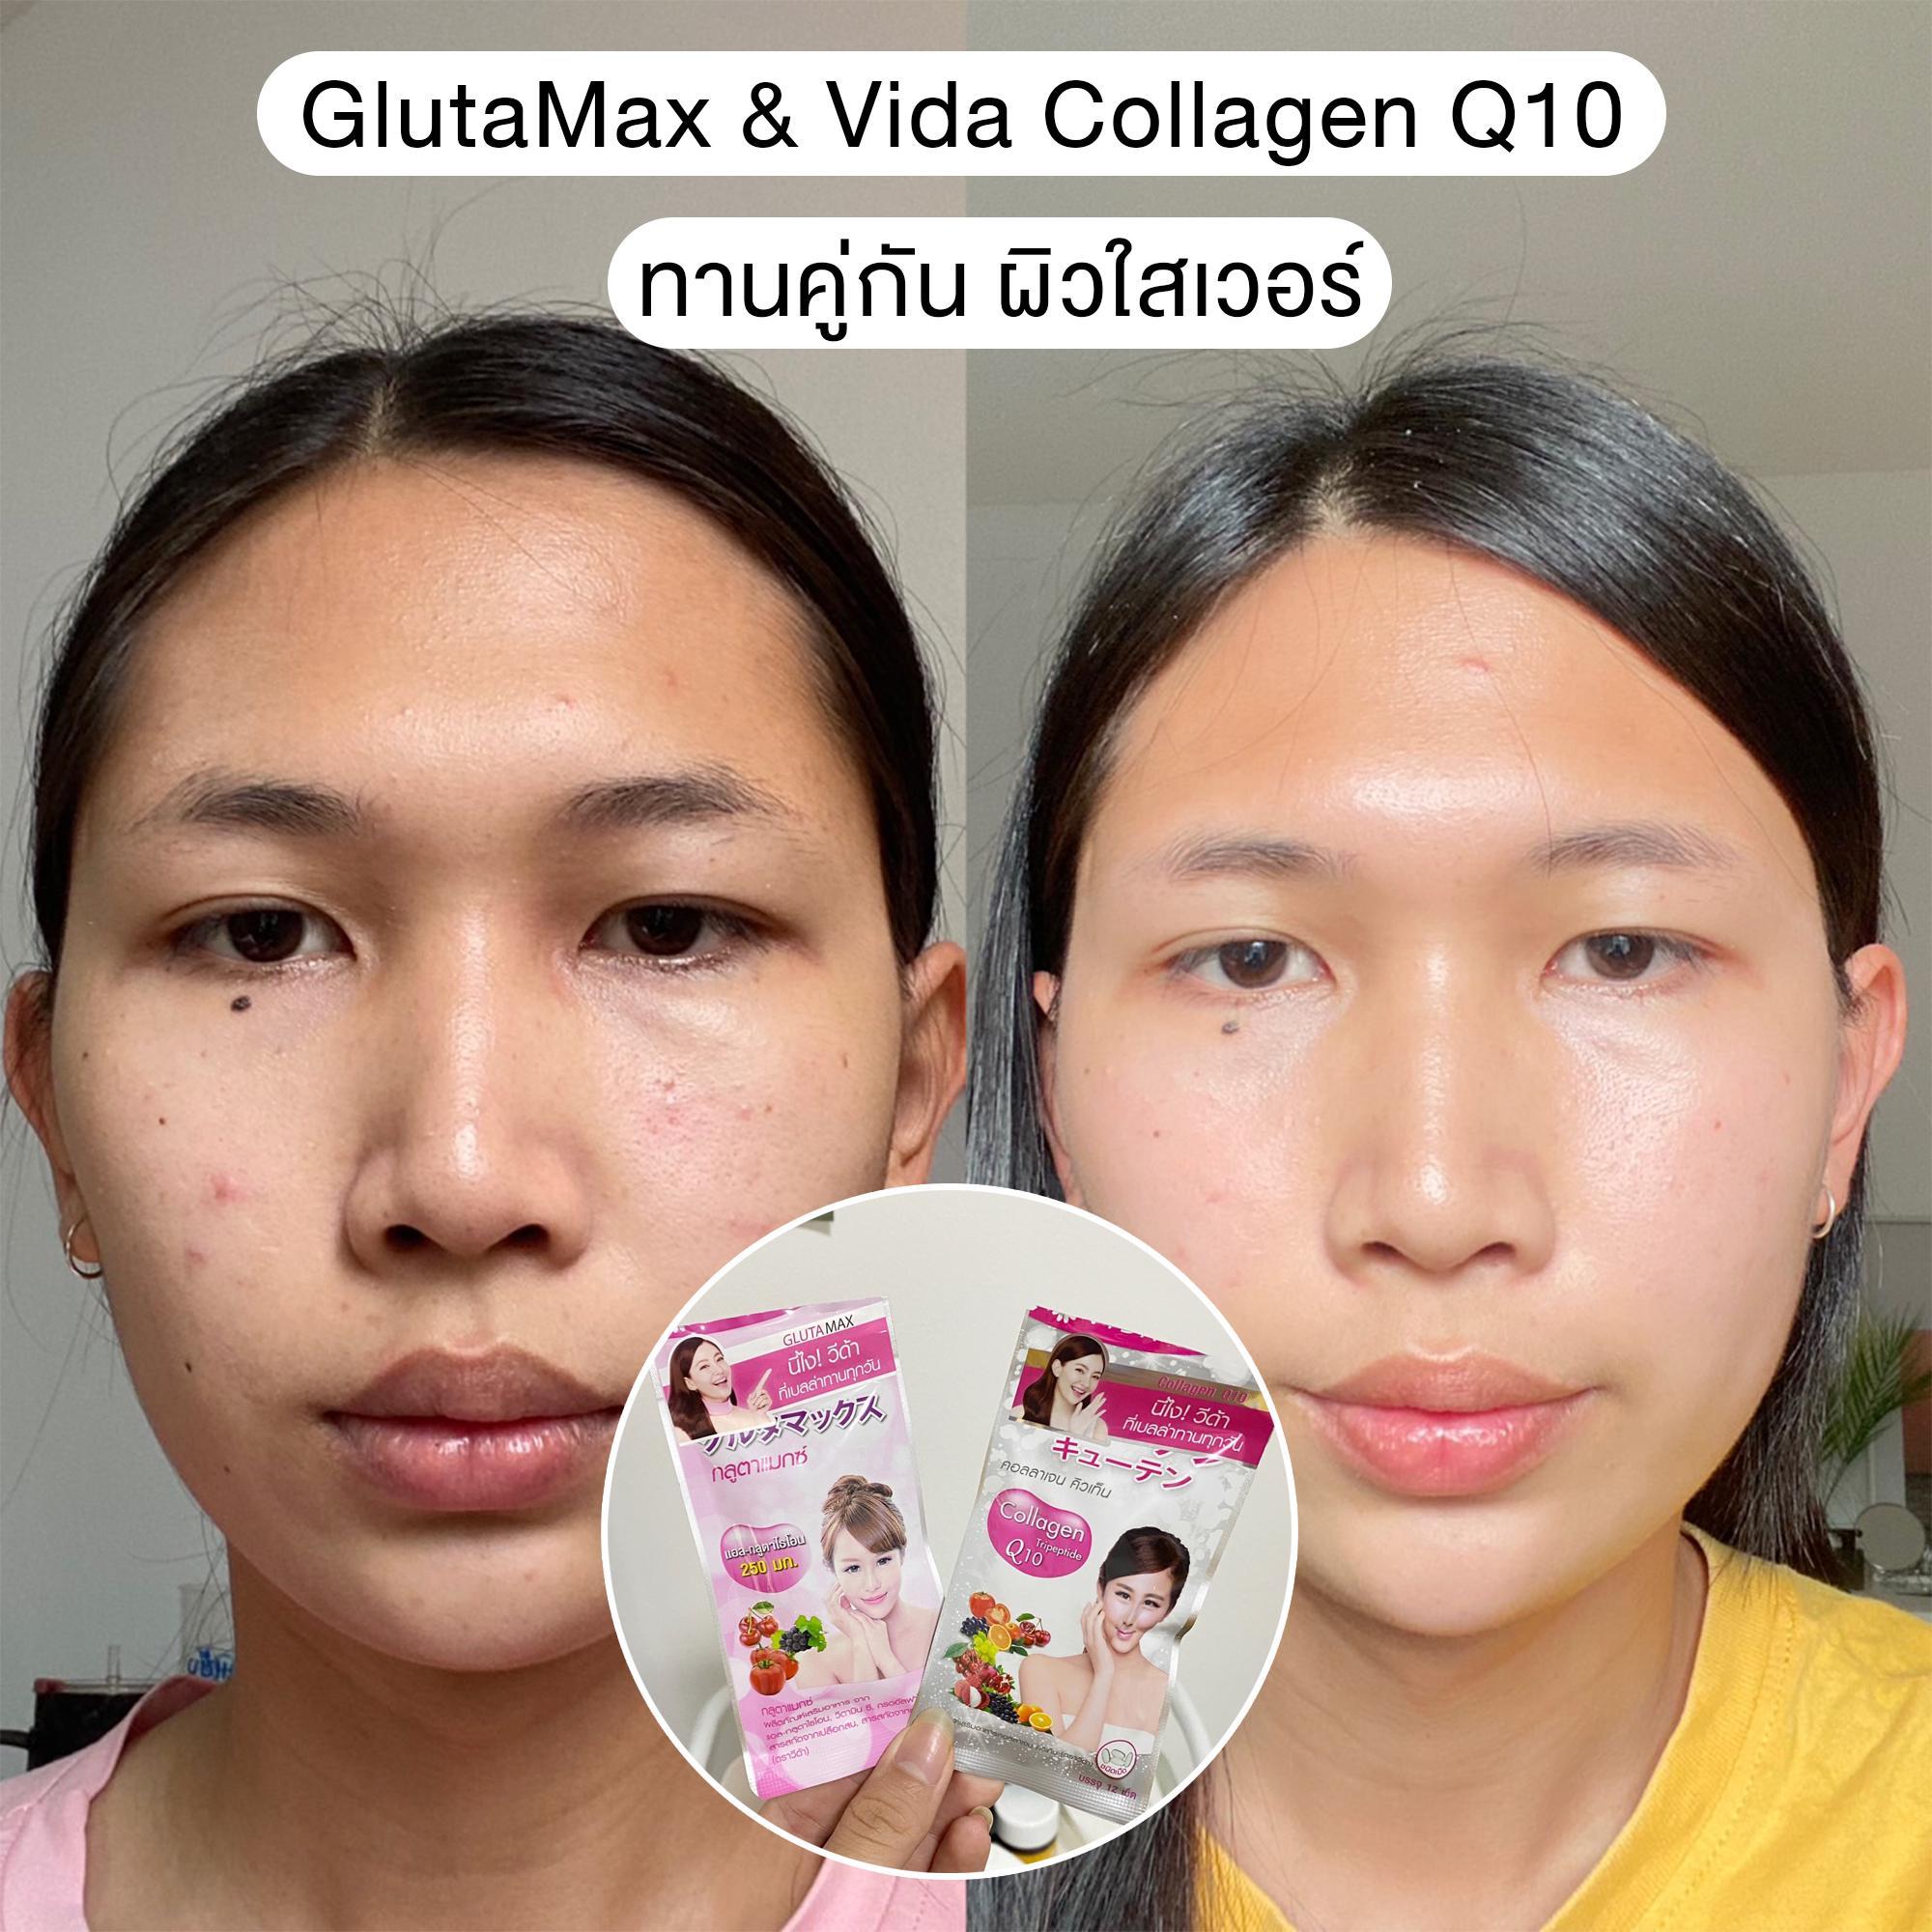 ภาพหน้าปก GlutaMax & Vida Collagen Q10 ทานคู่กัน ผิวใสเวอร์ ที่:0